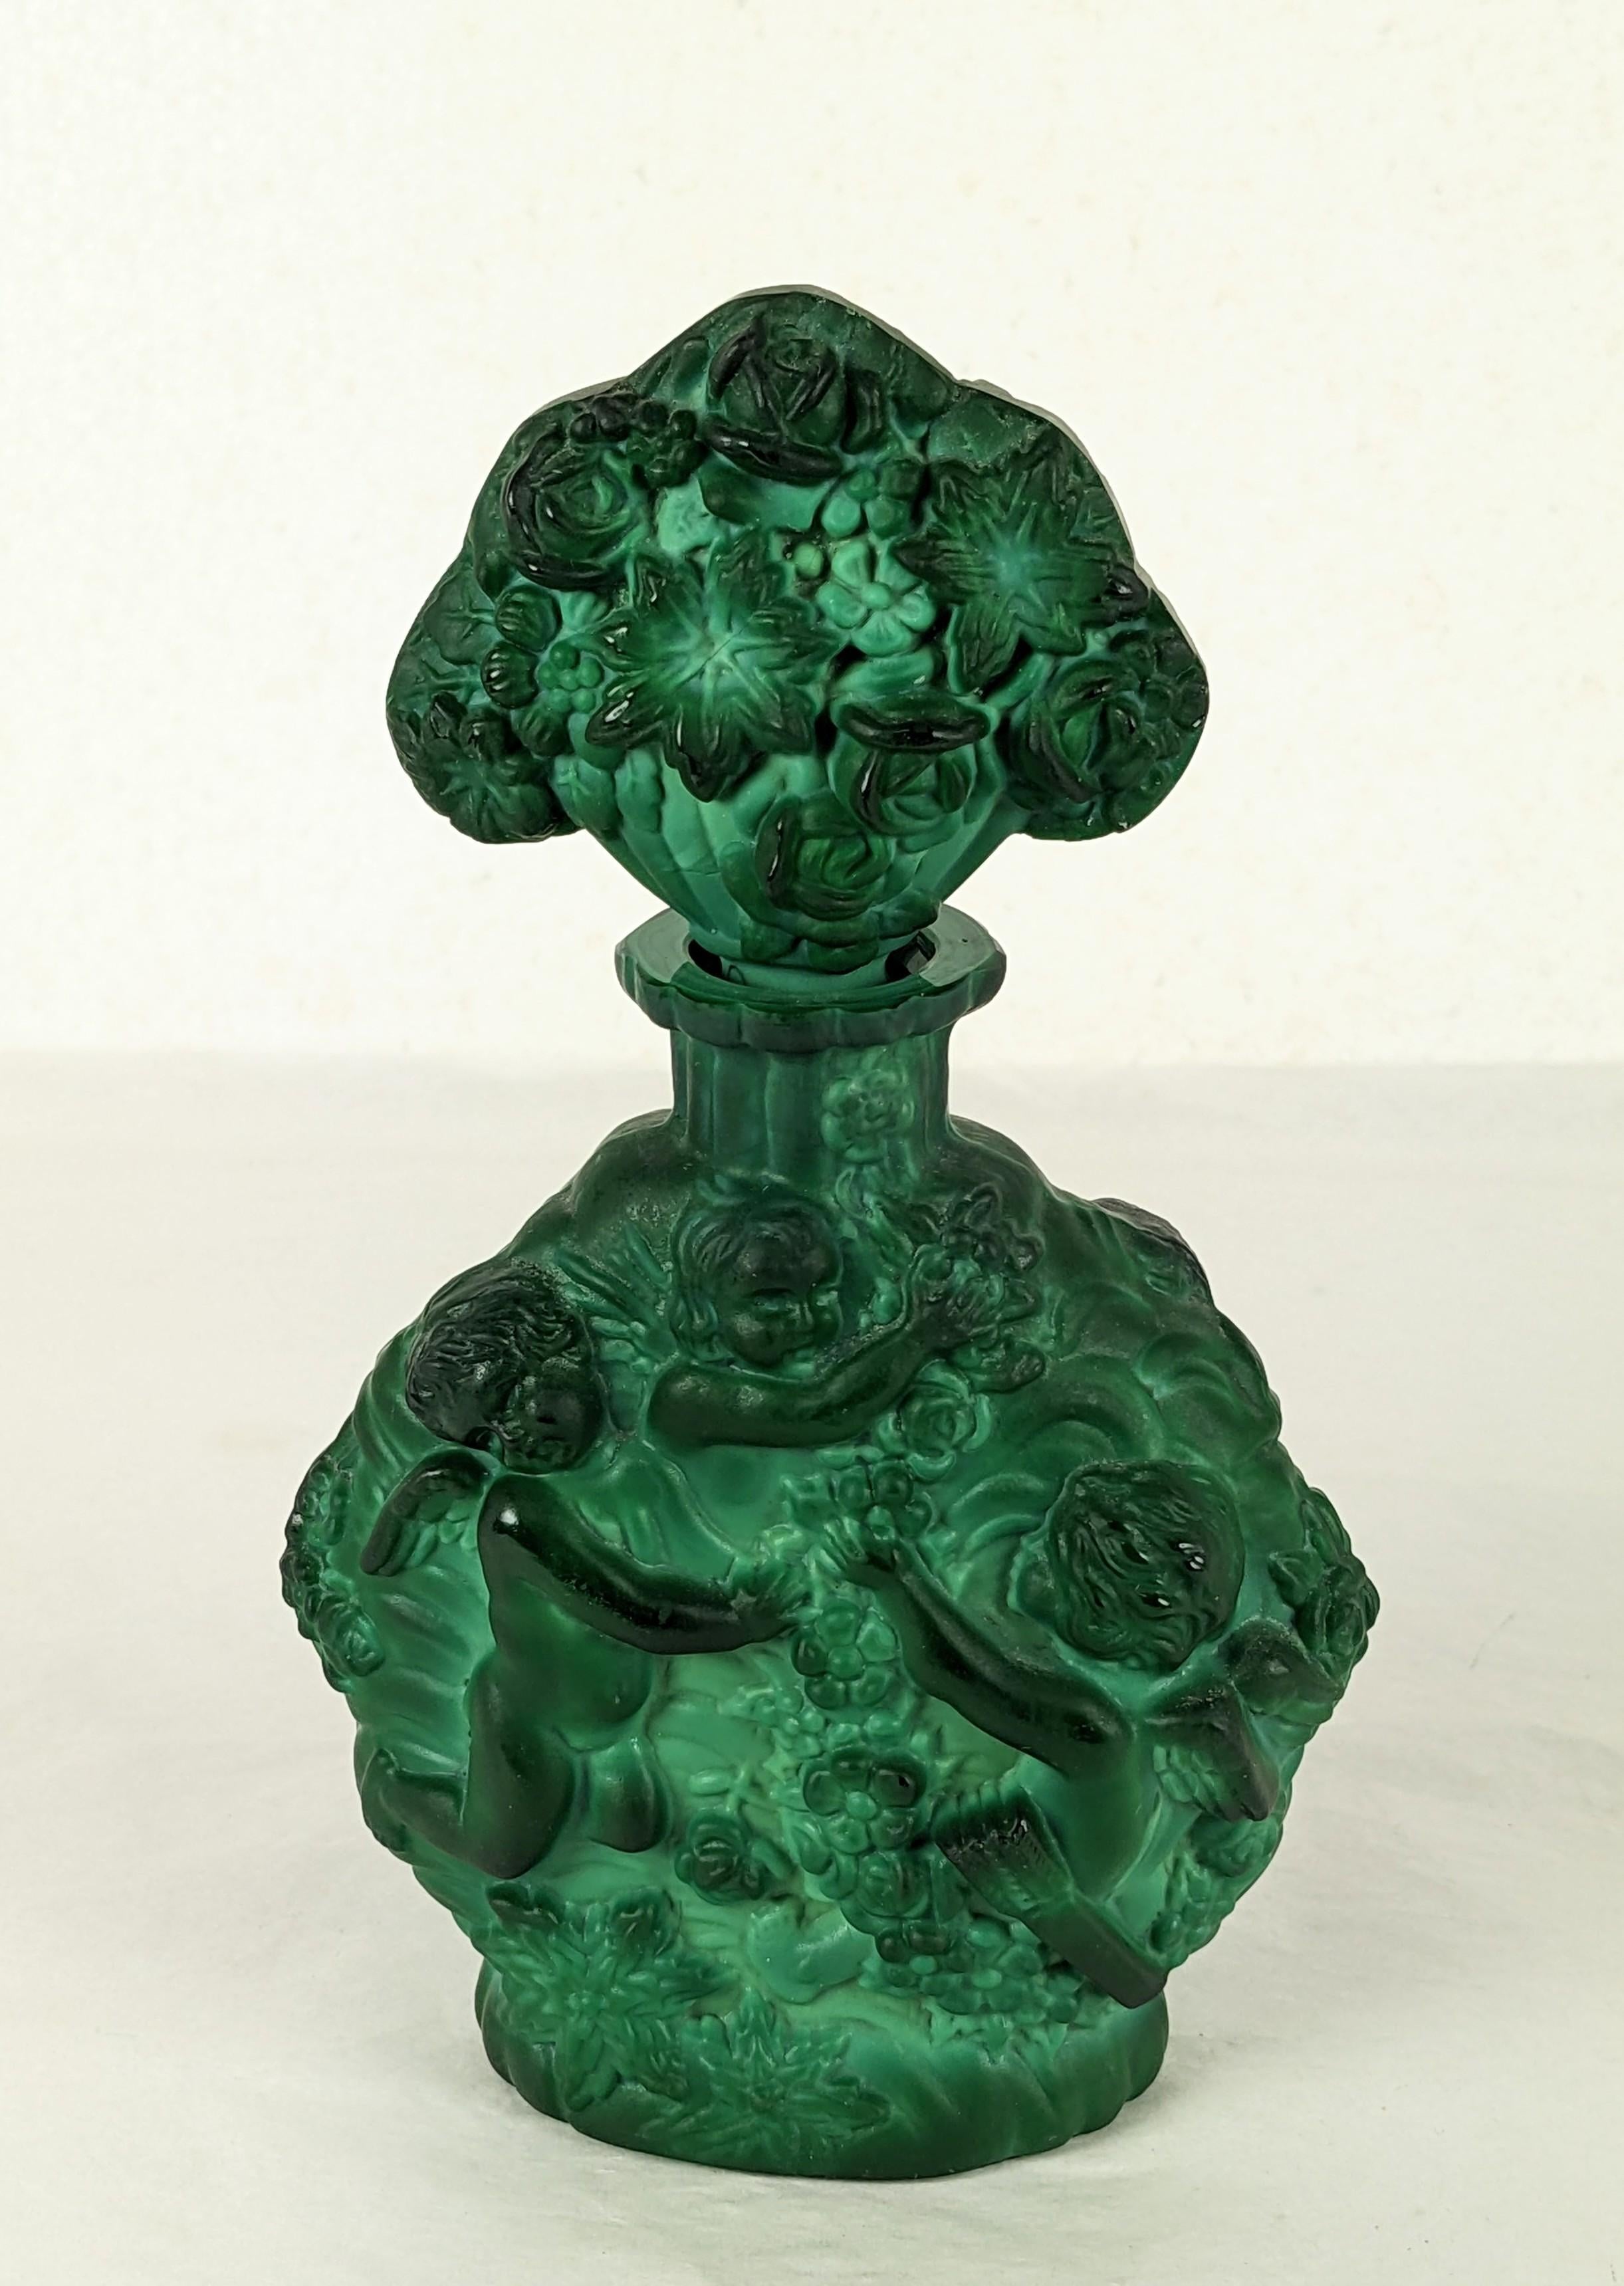 Böhmisches tschechisches Malachit-Kunstglas-Parfümfläschchen mit geflügelten, Trauben pflückenden Putten von Schlevogt Hoffman x Ingrid um 1935.